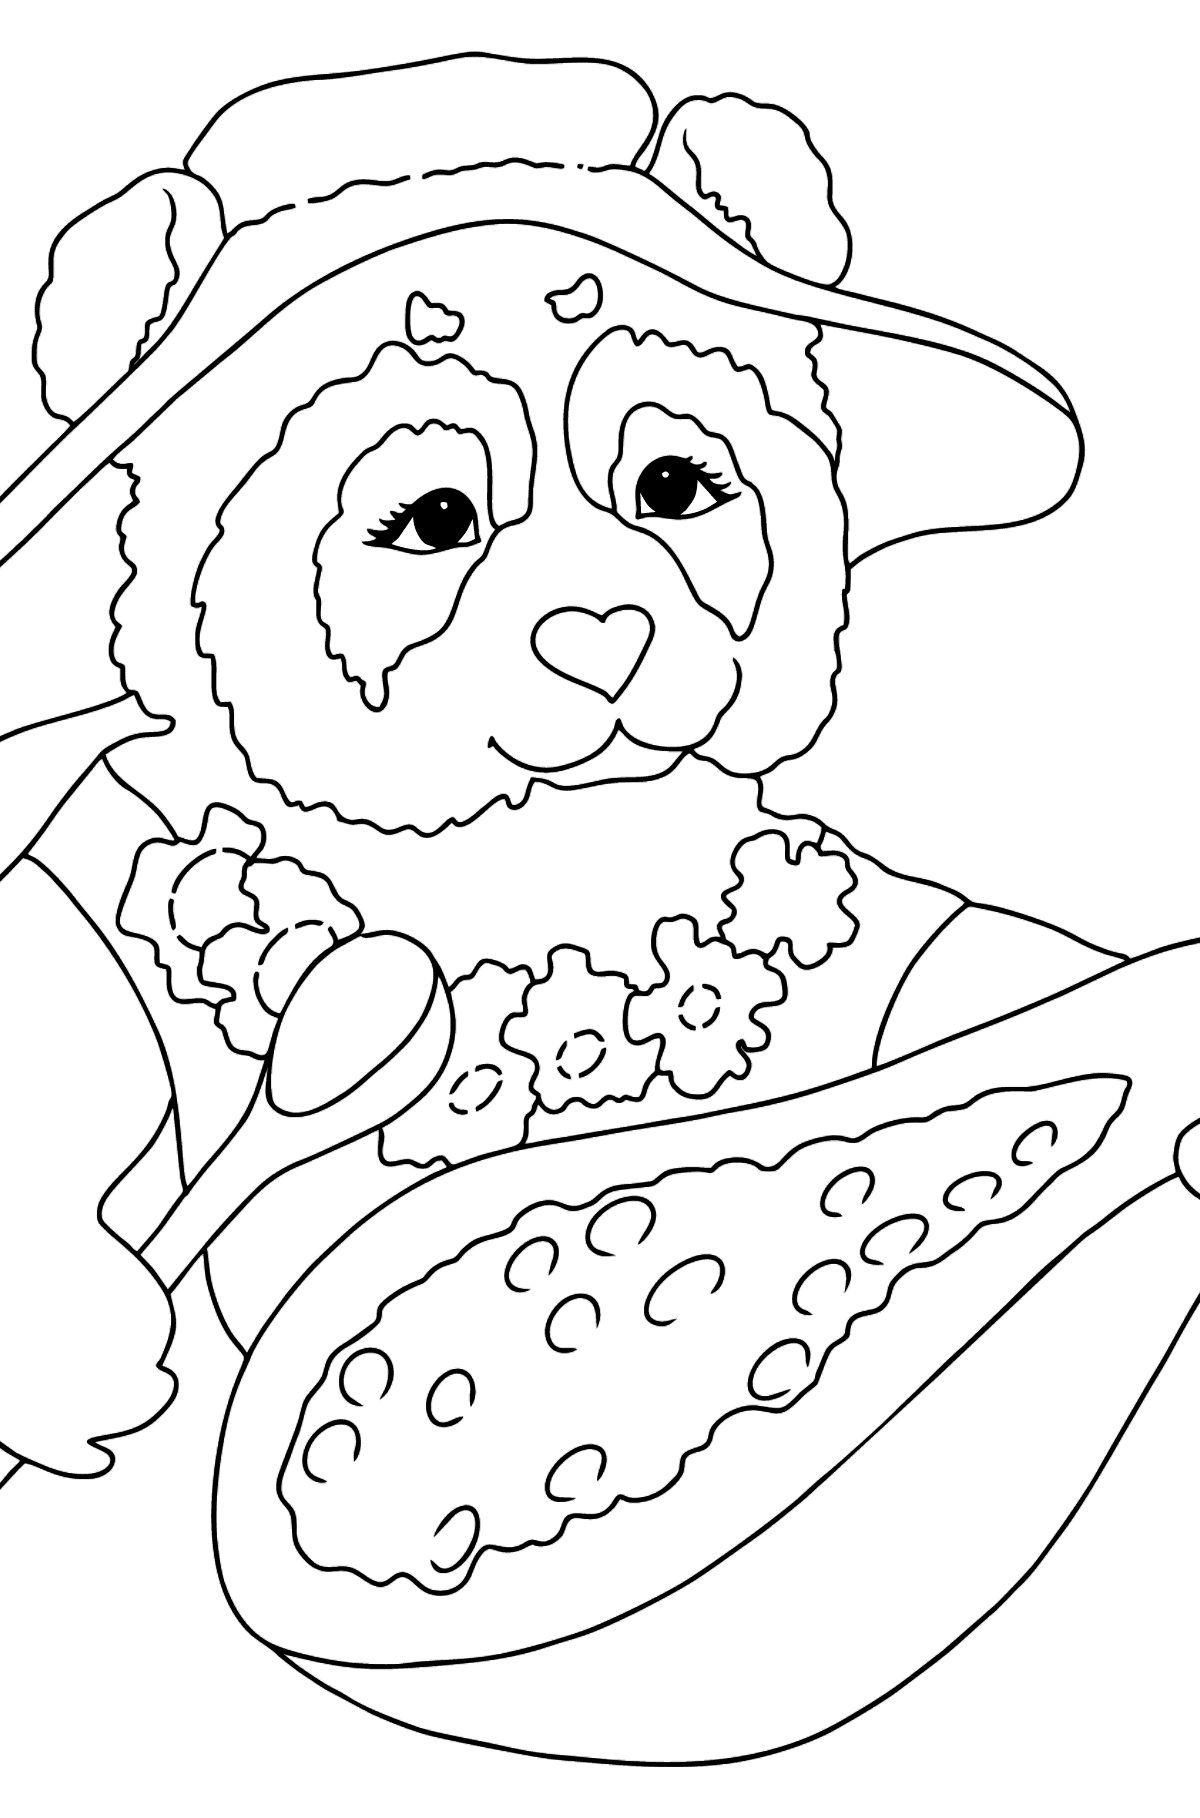 Desen de colorat panda minunat - Desene de colorat pentru copii